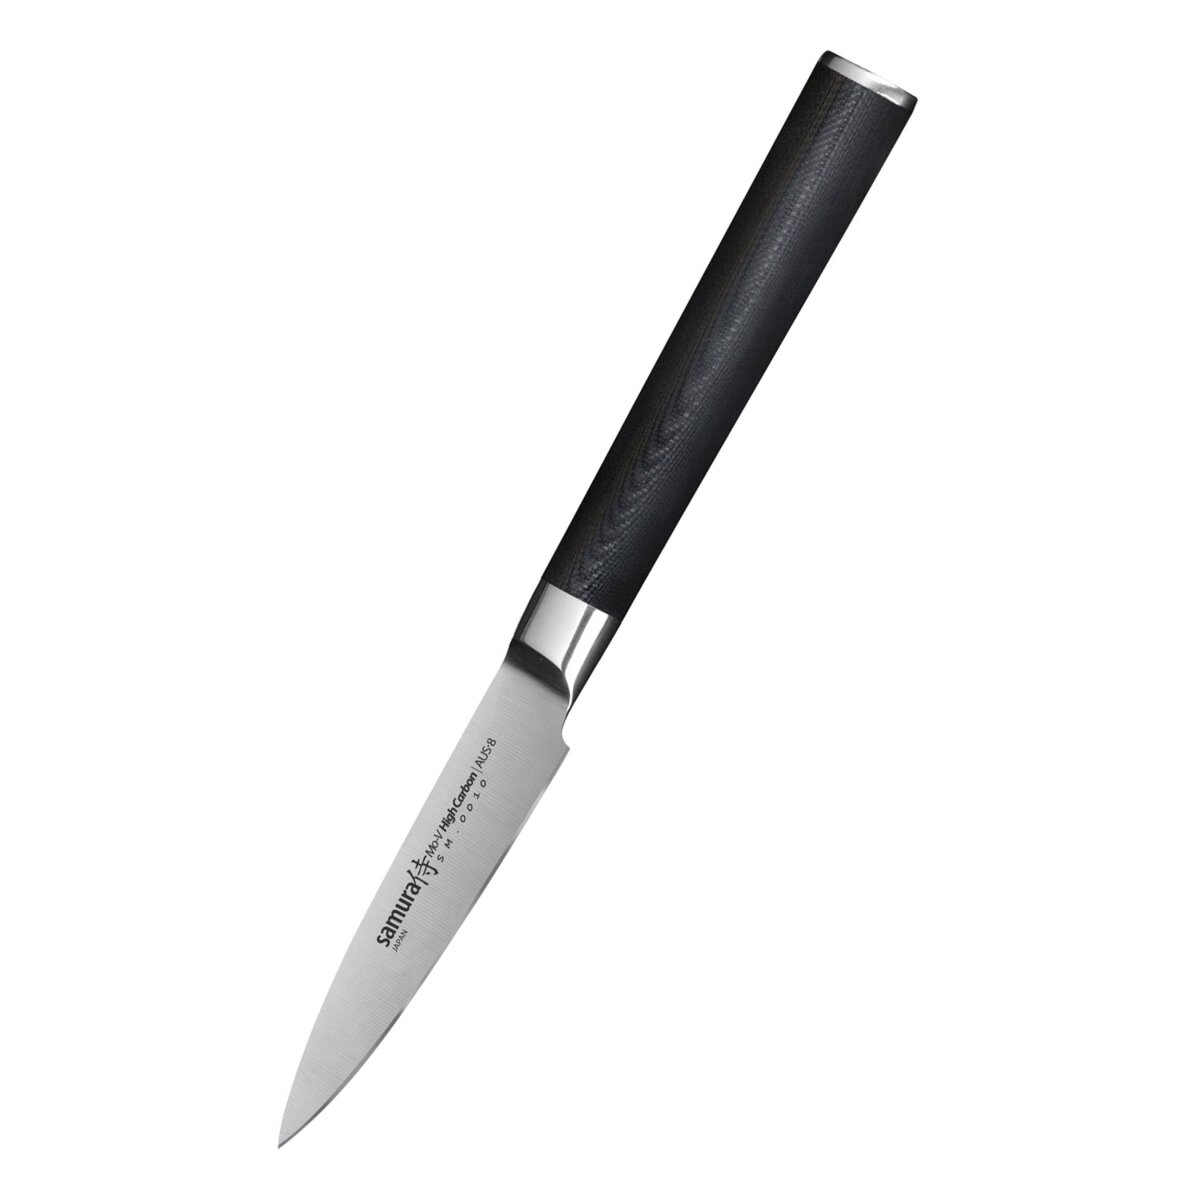 Samura MO-V Paring Knife 3.2"/80 mm